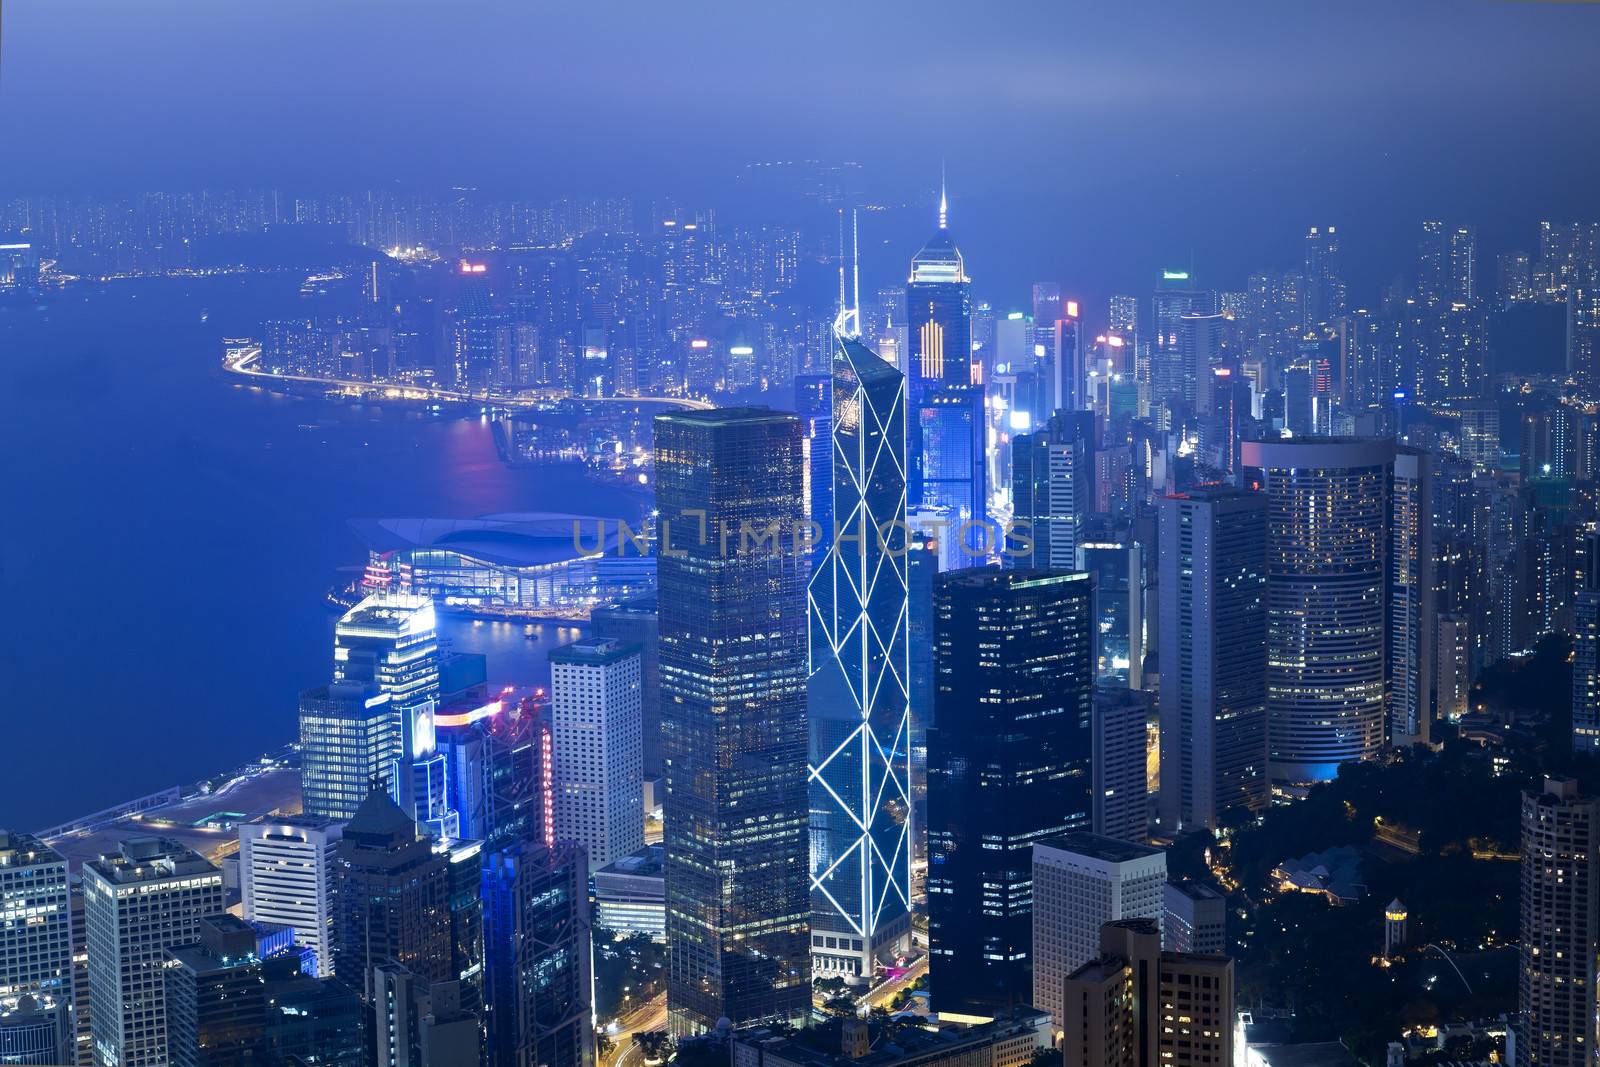 Hong Kong skyscrapers at night by kawing921